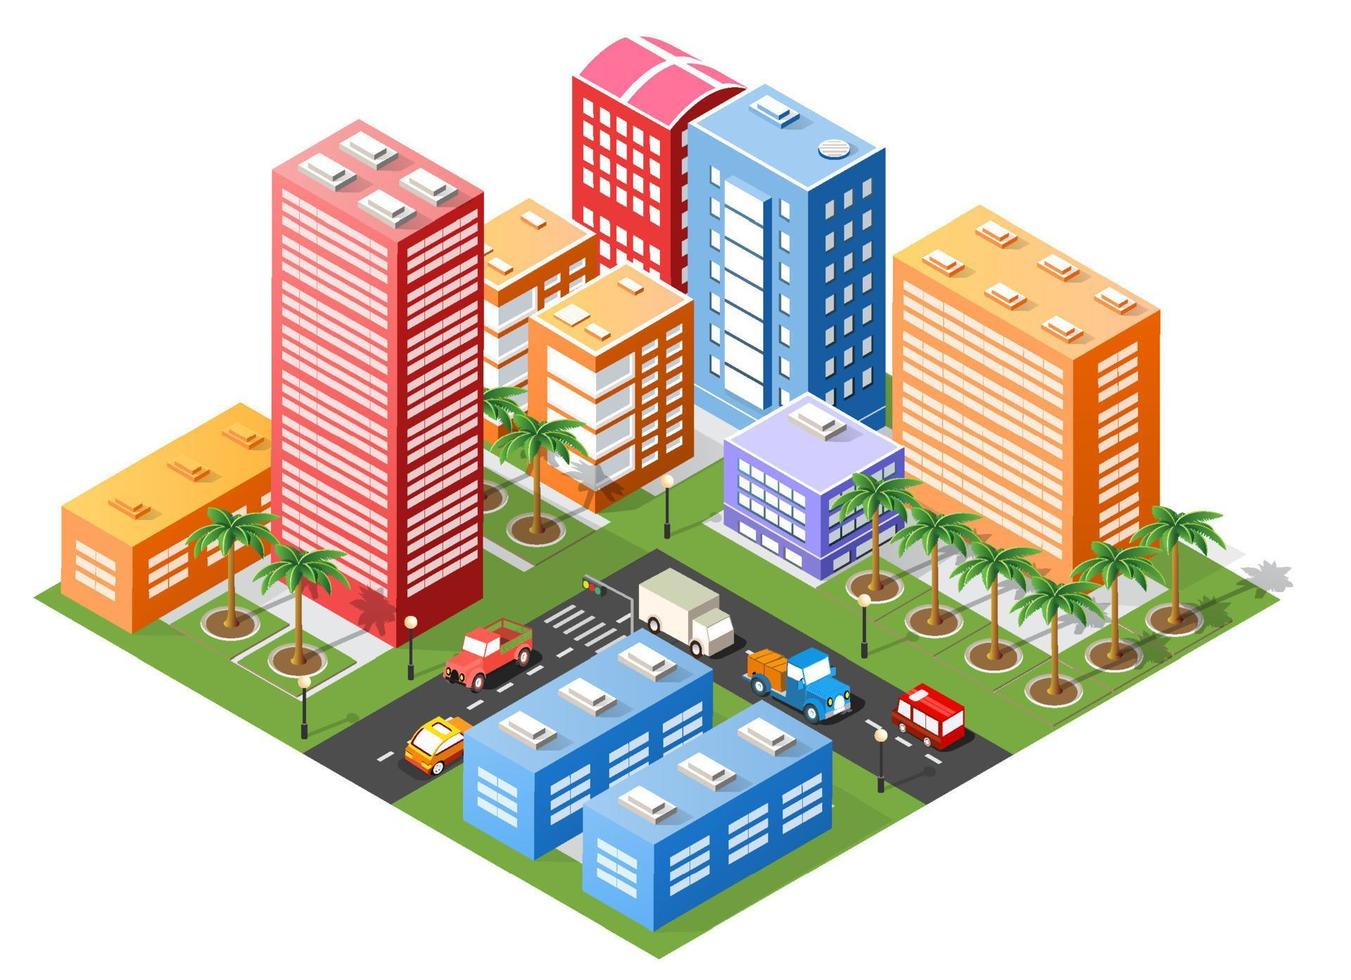 ilustración 3d isométrica área urbana de la ciudad con muchas casas y rascacielos, calles, árboles y vehículos vector